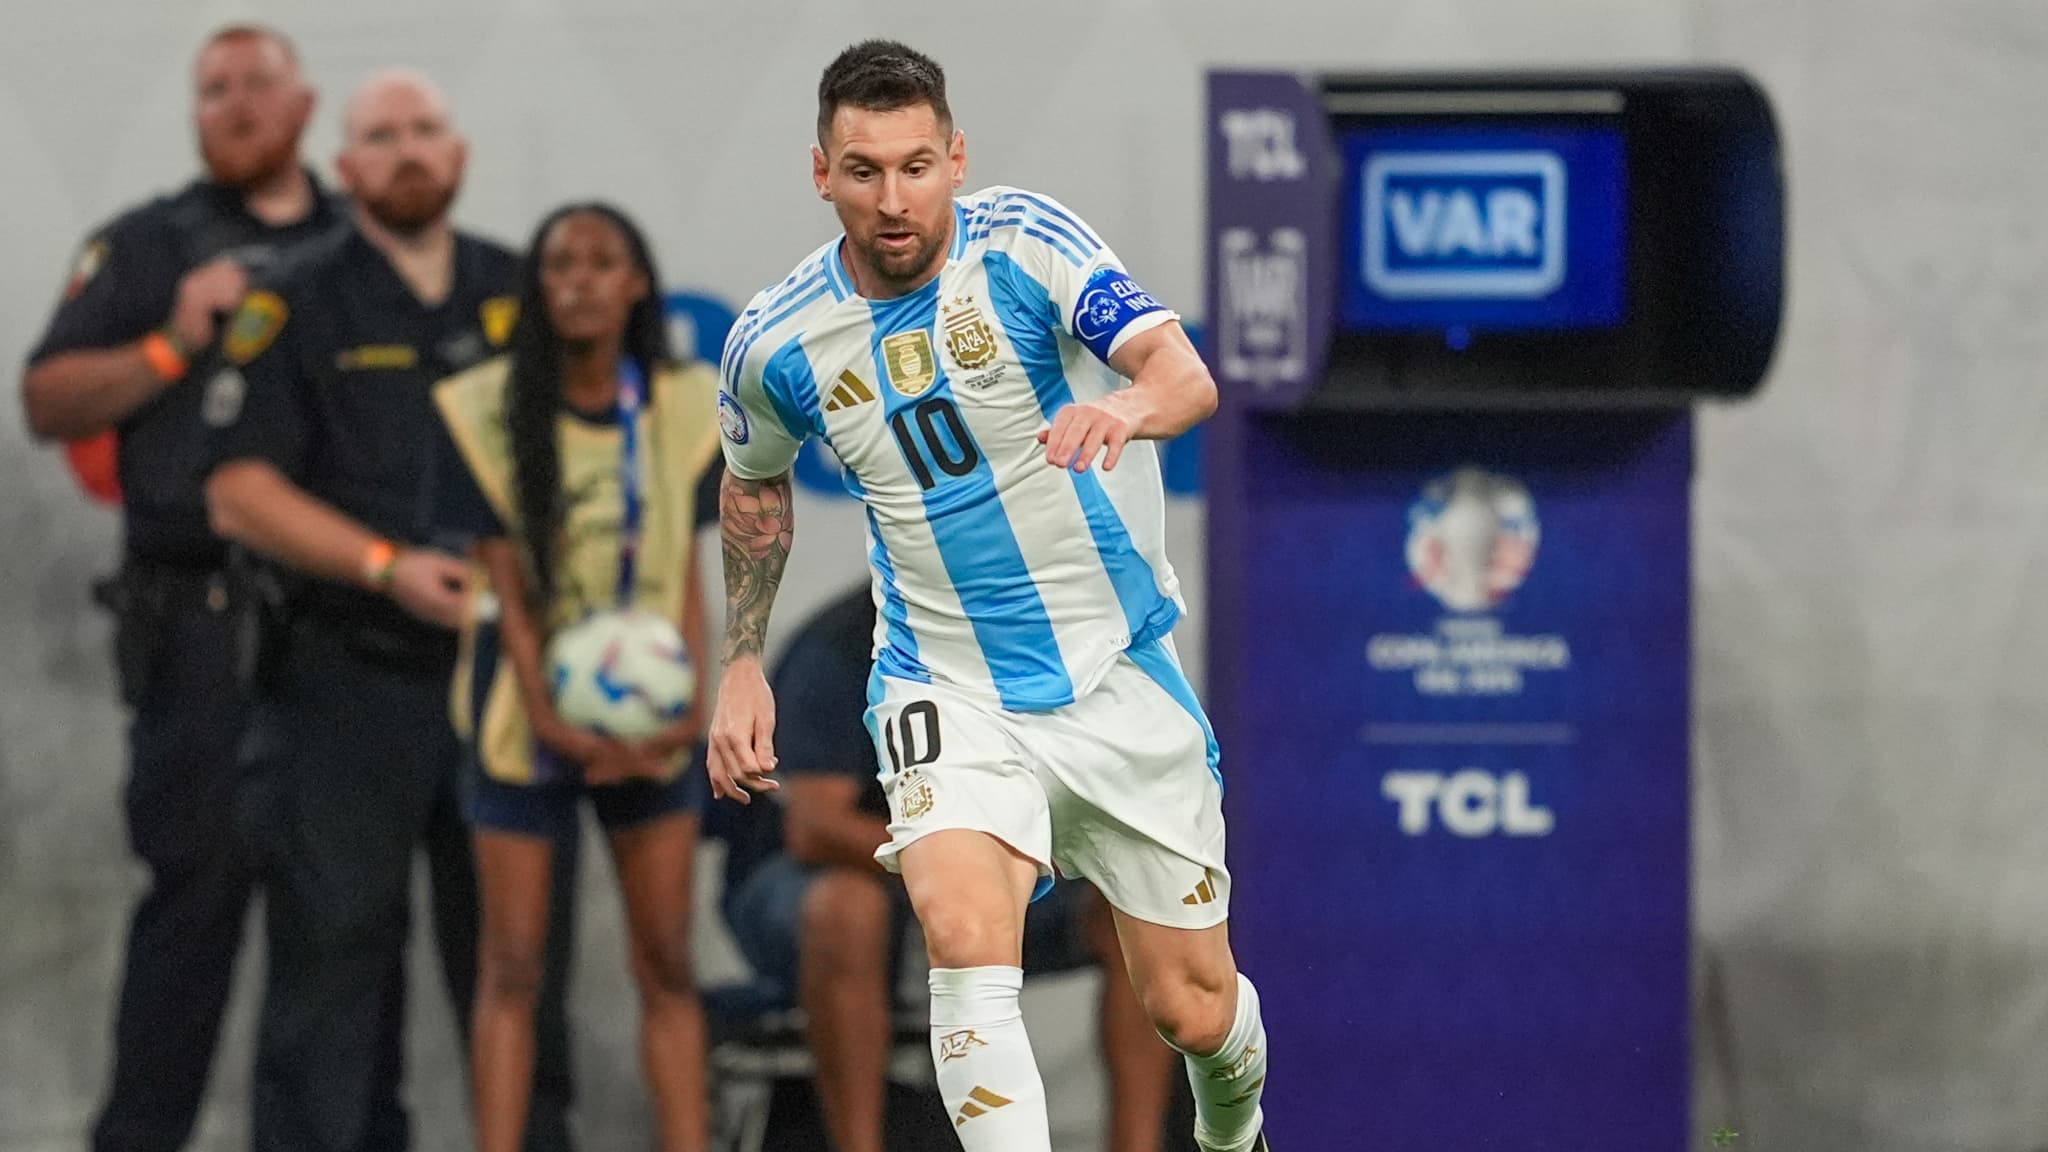 Copa America : Les mots de Lionel Messi sur son avenir font trembler l’Argentine et le monde du football